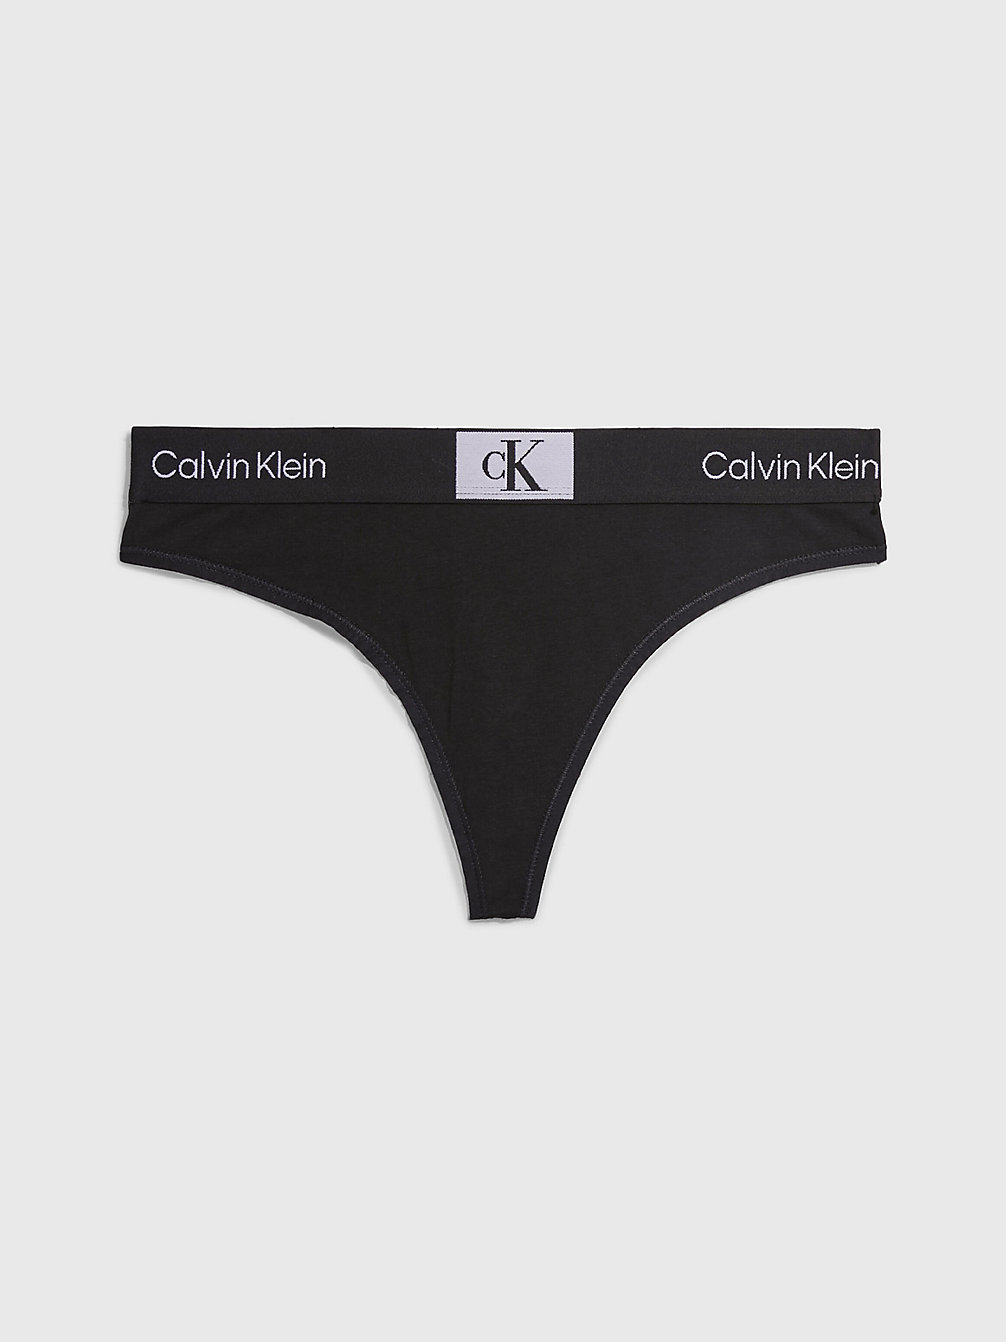 BLACK > Stringi - Ck96 > undefined Kobiety - Calvin Klein